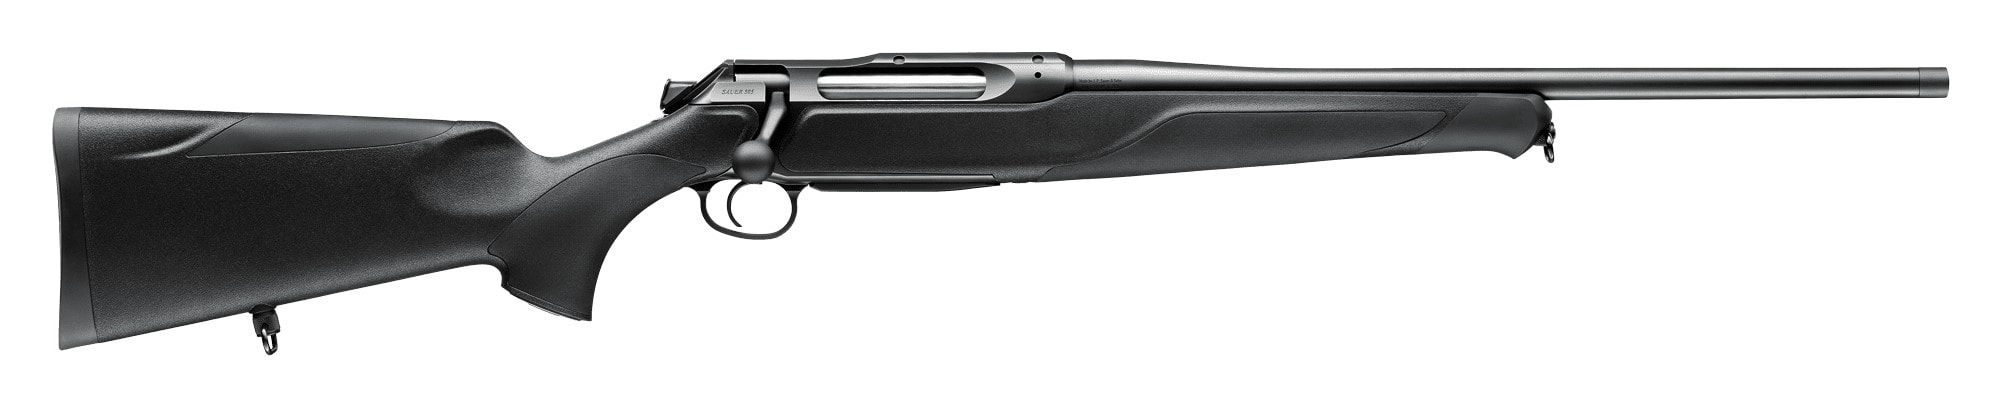 Sauer 505 Classic XT Rifle komplett